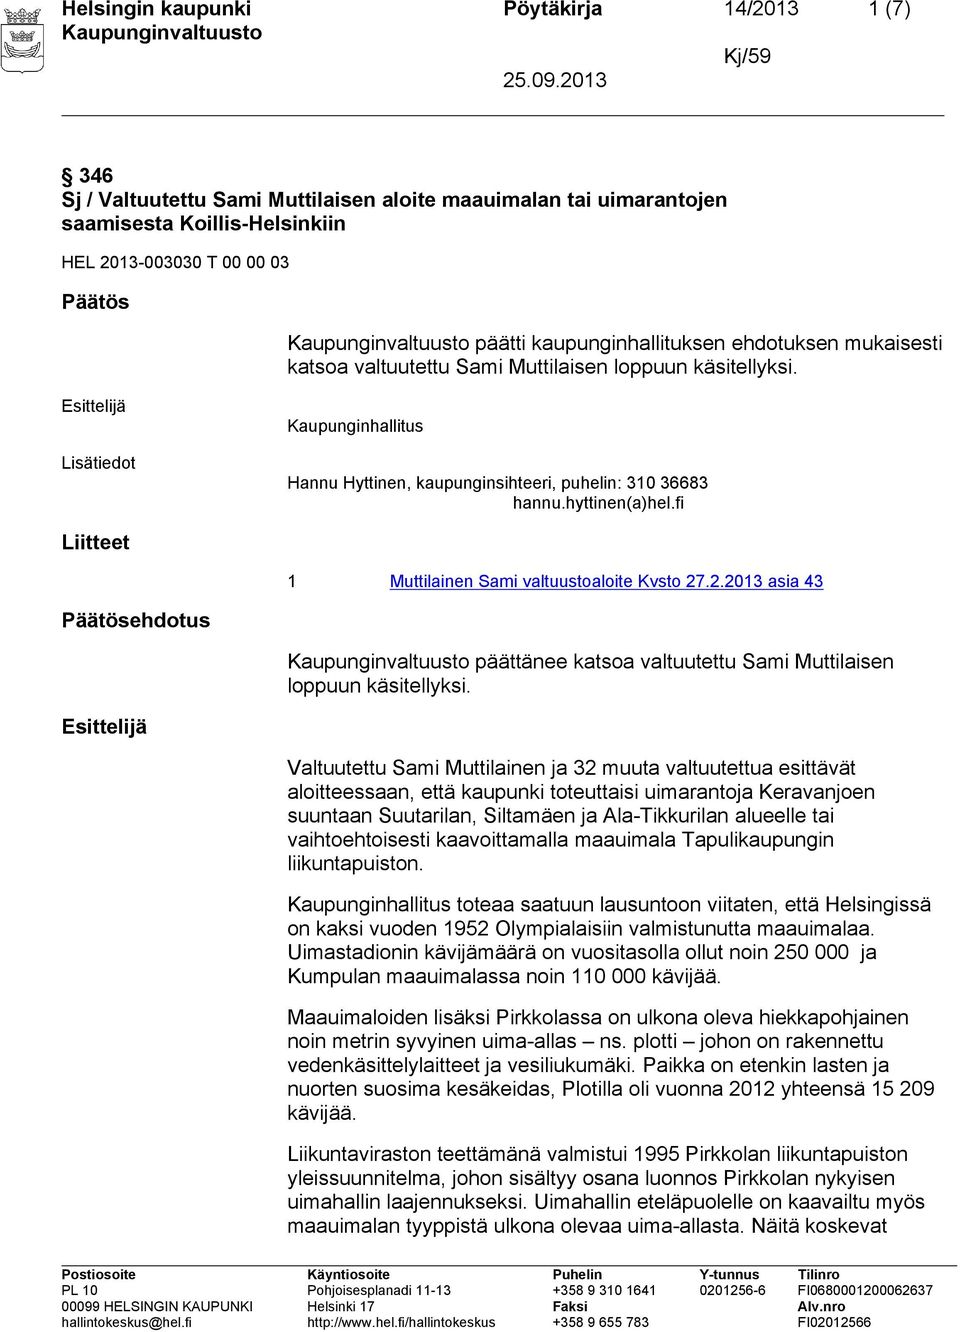 fi Liitteet 1 Muttilainen Sami valtuustoaloite Kvsto 27.2.2013 asia 43 ehdotus päättänee katsoa valtuutettu Sami Muttilaisen loppuun käsitellyksi.